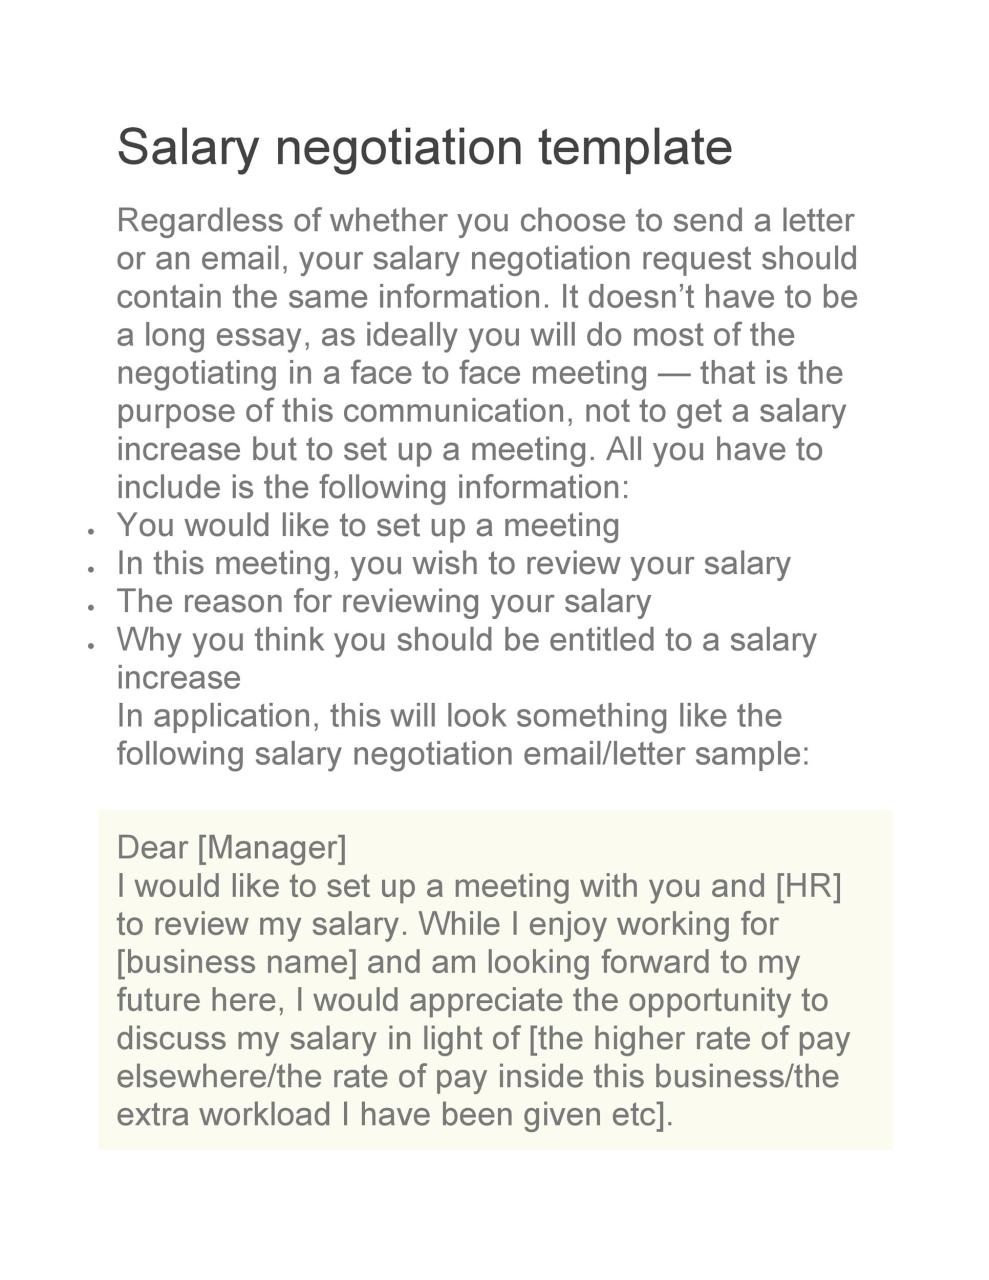 Lettre de négociation de salaire gratuite 27